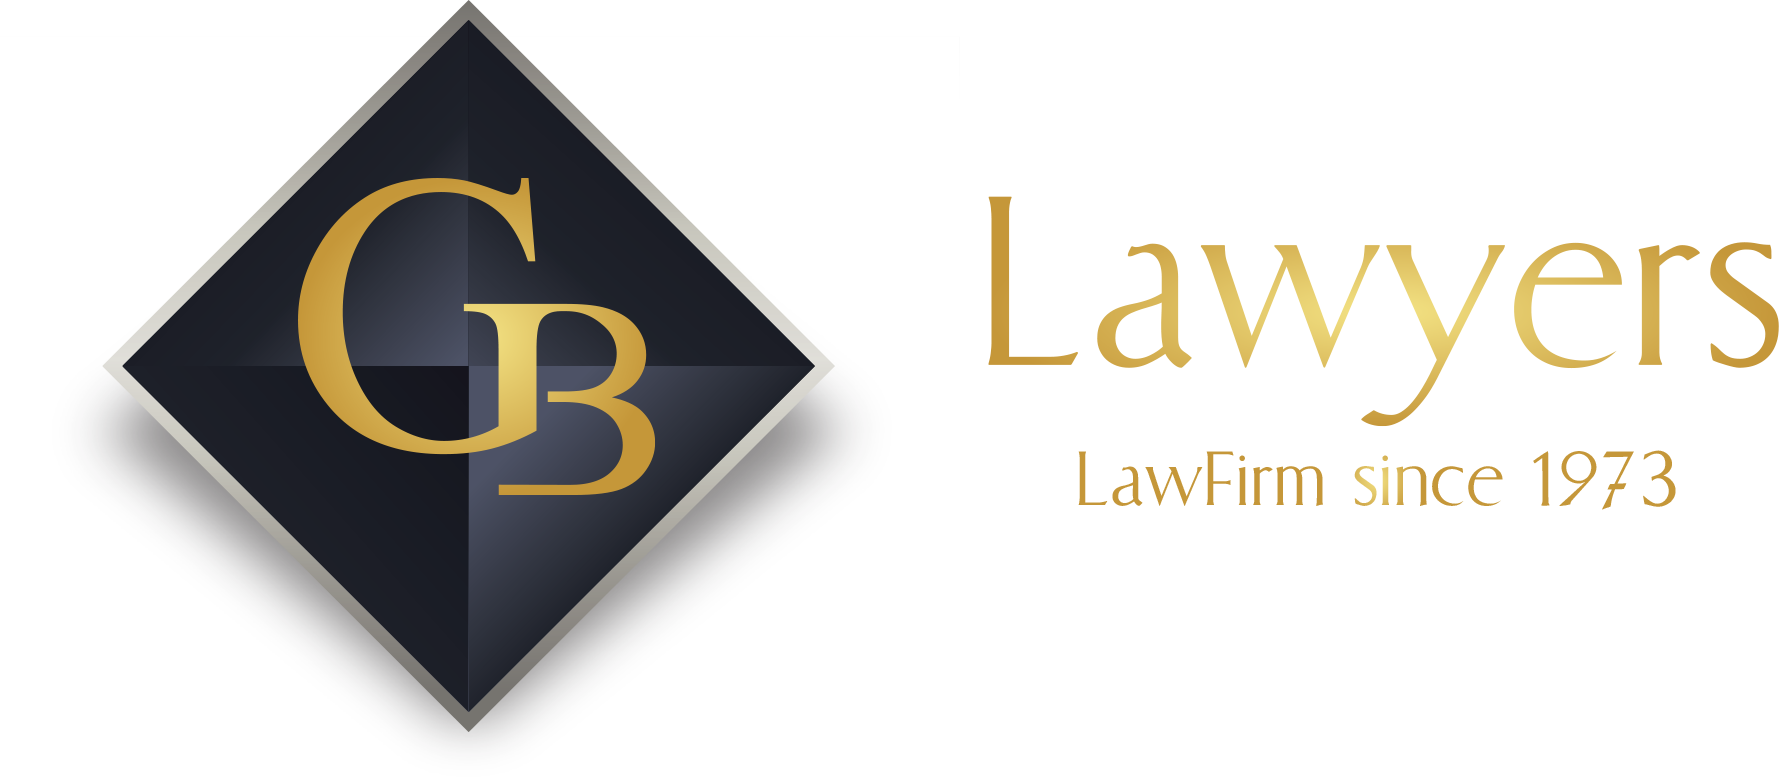 GB LAWYERS LAW FIRM